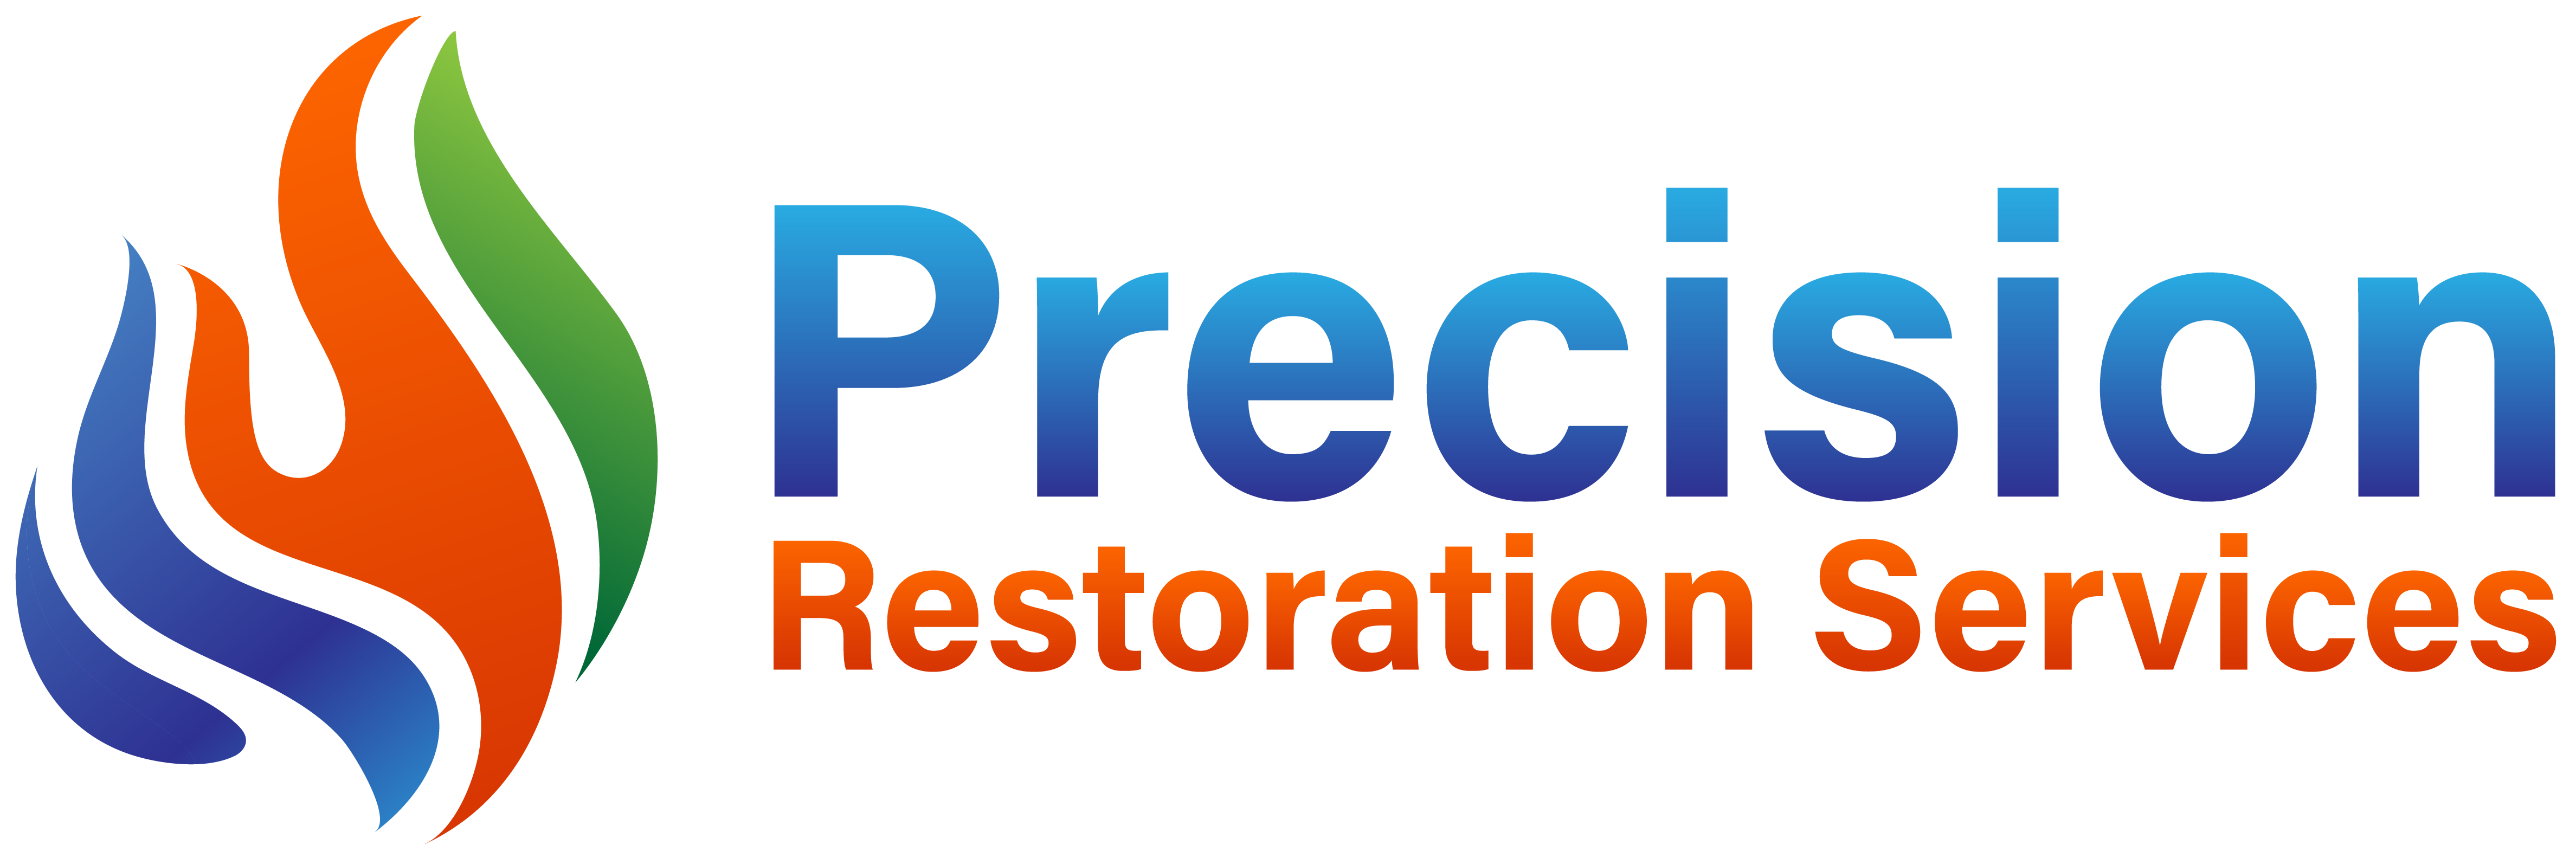 Precision Restoration Services reviews